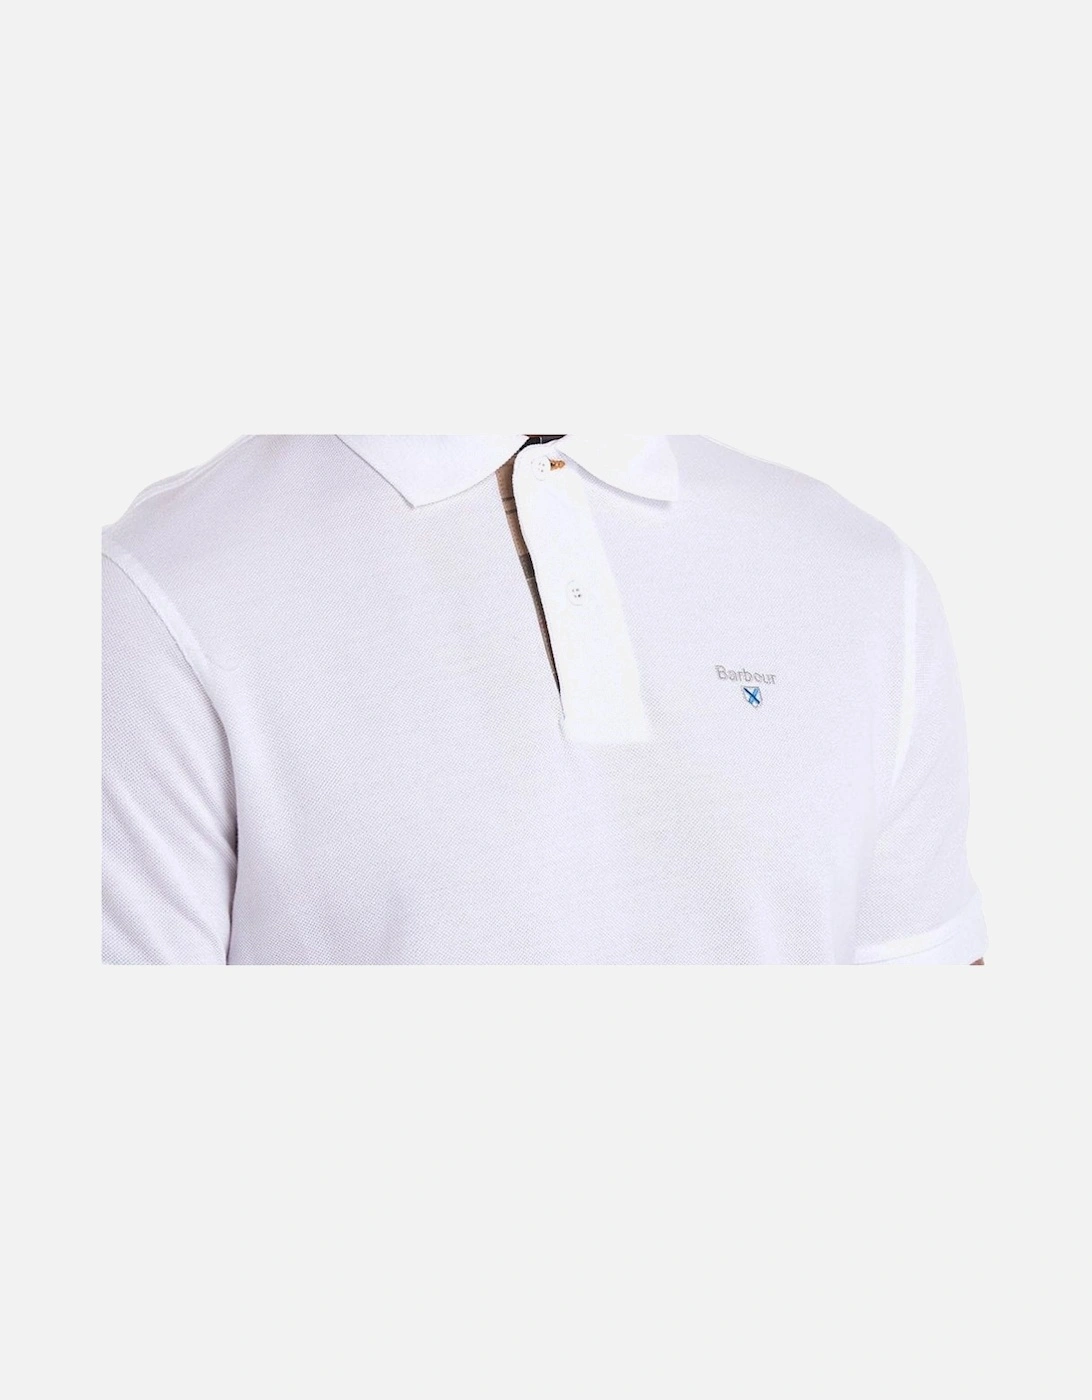 Men's White Tartan Pique Polo Shirt